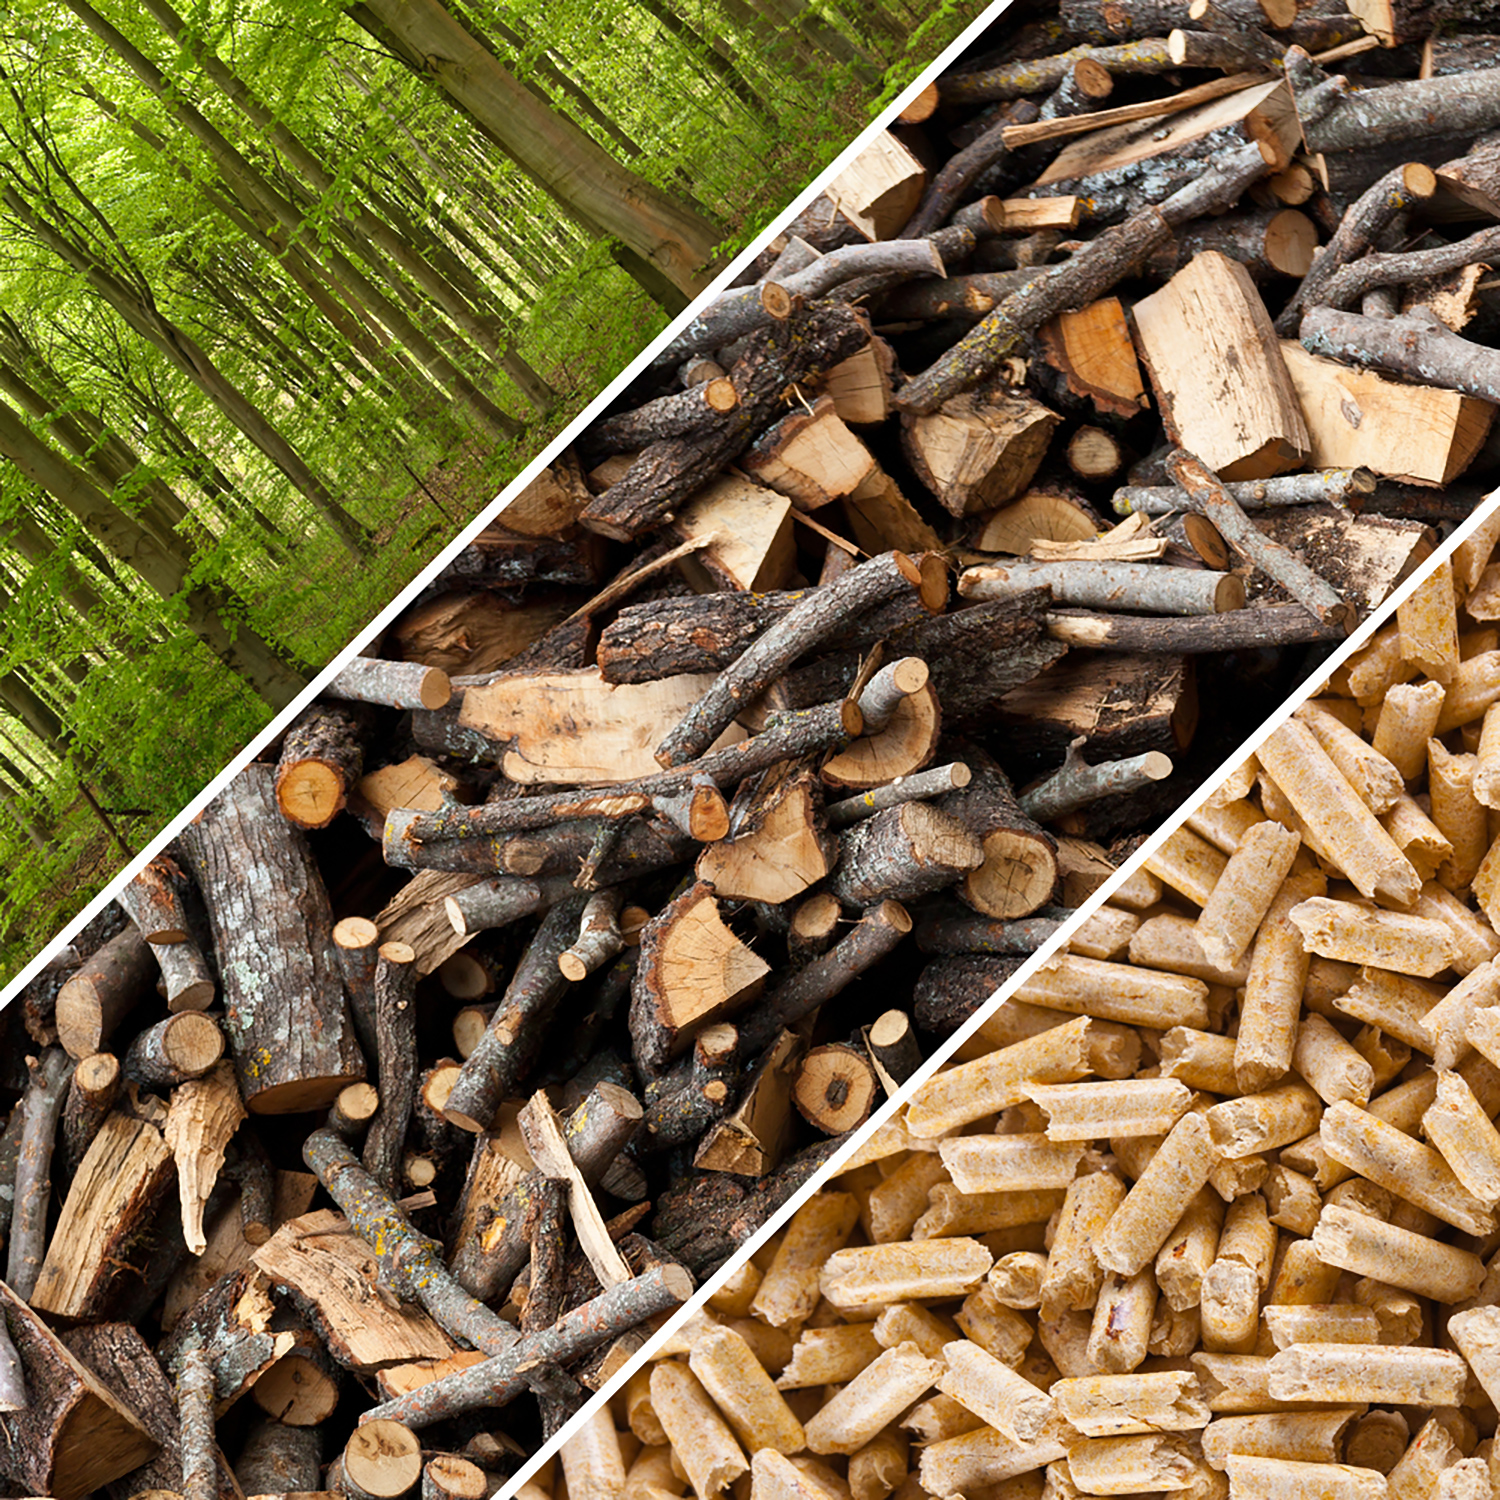 Impianti a biomasse, pellet e cippato